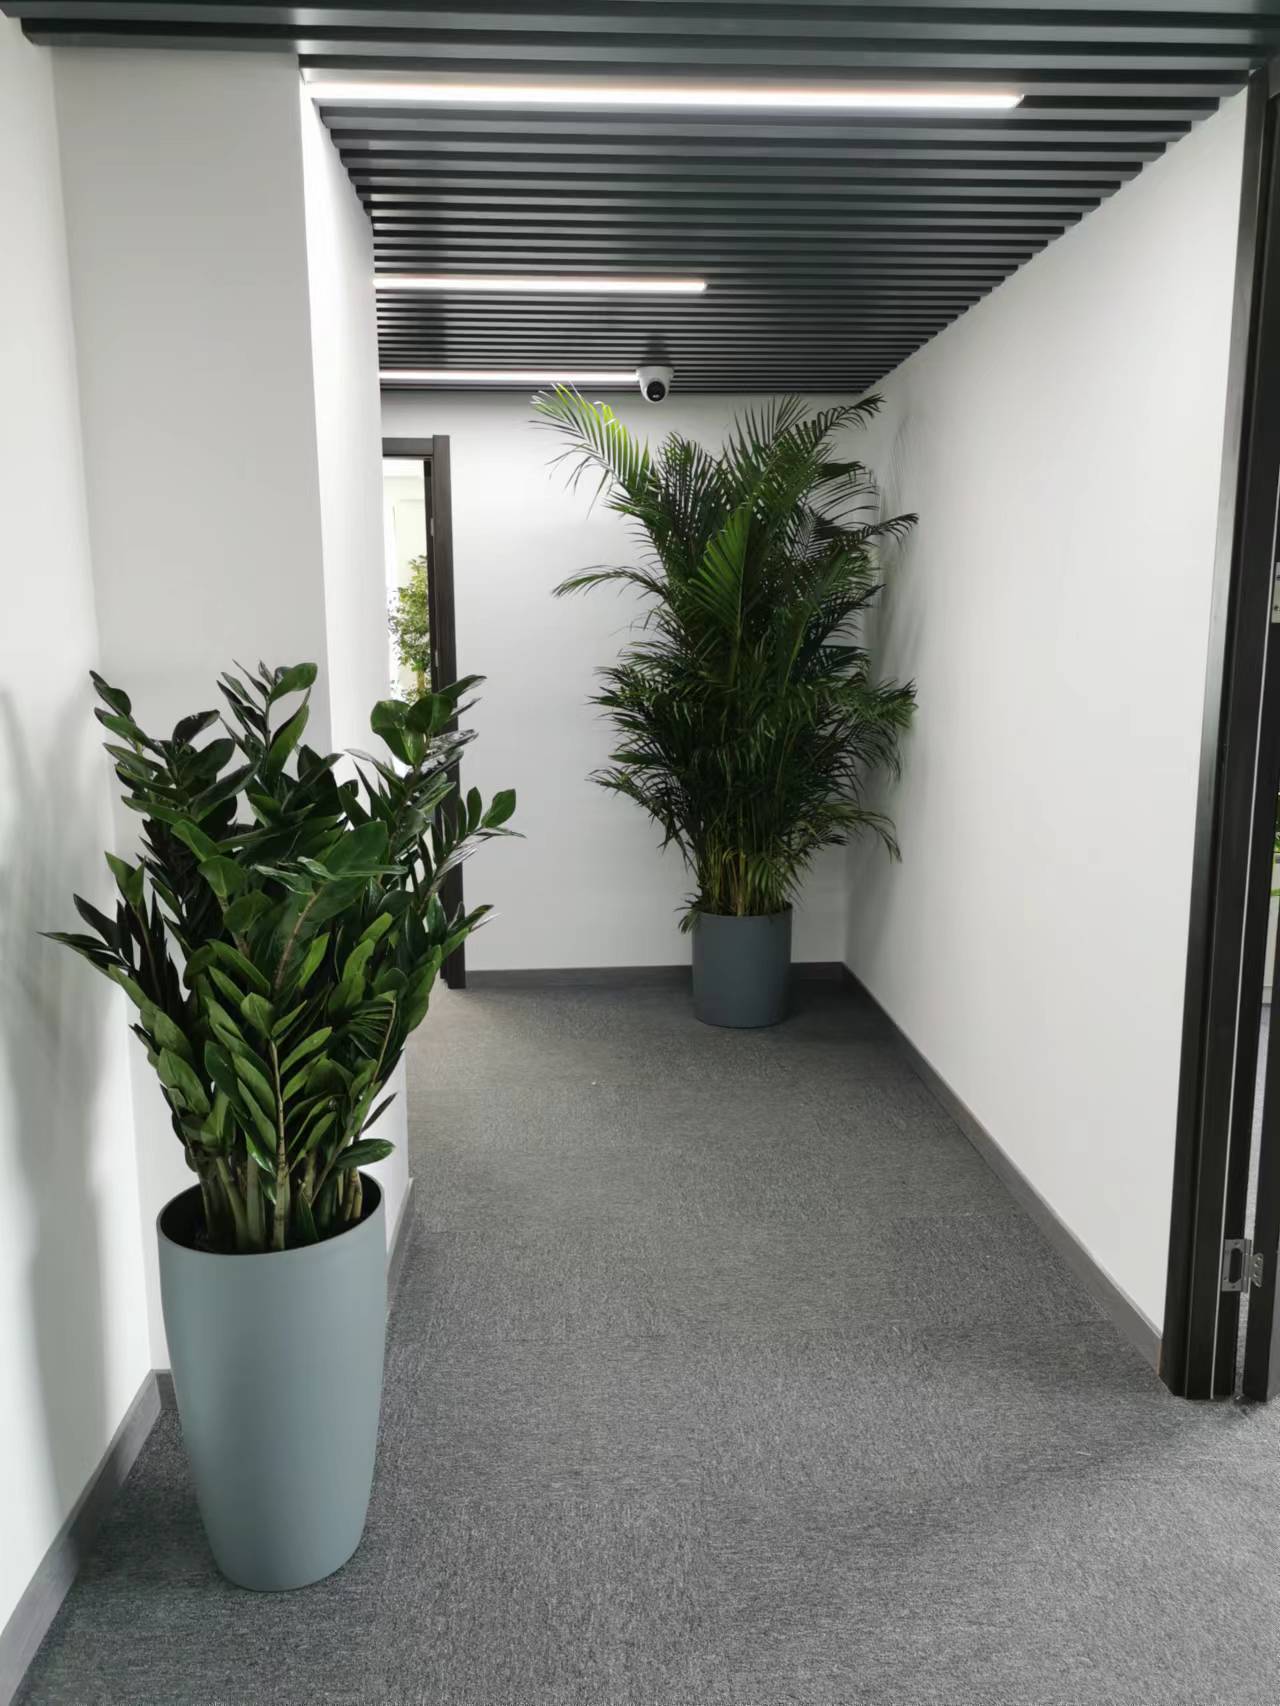 辦公室植物花卉有哪些品種?綠植花卉擺放在什么位置?